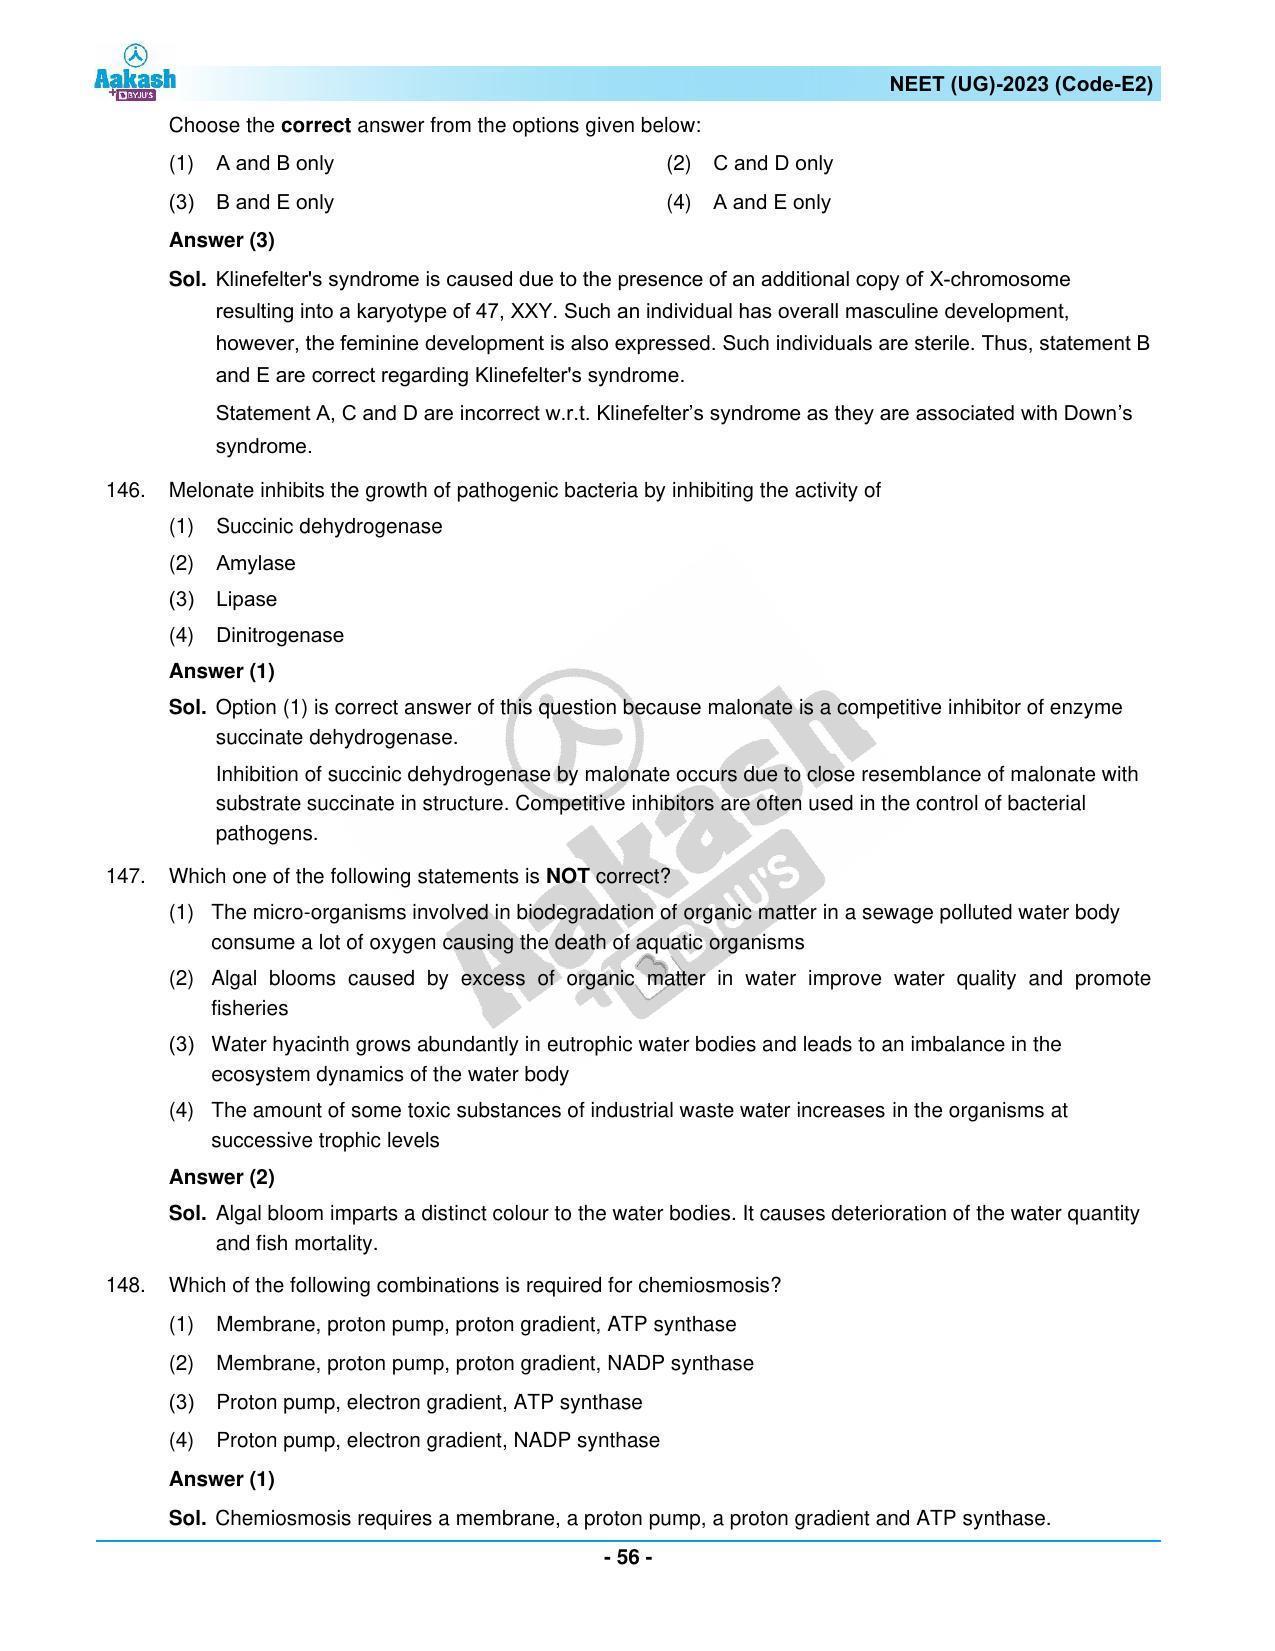 NEET 2023 Question Paper E2 - Page 56